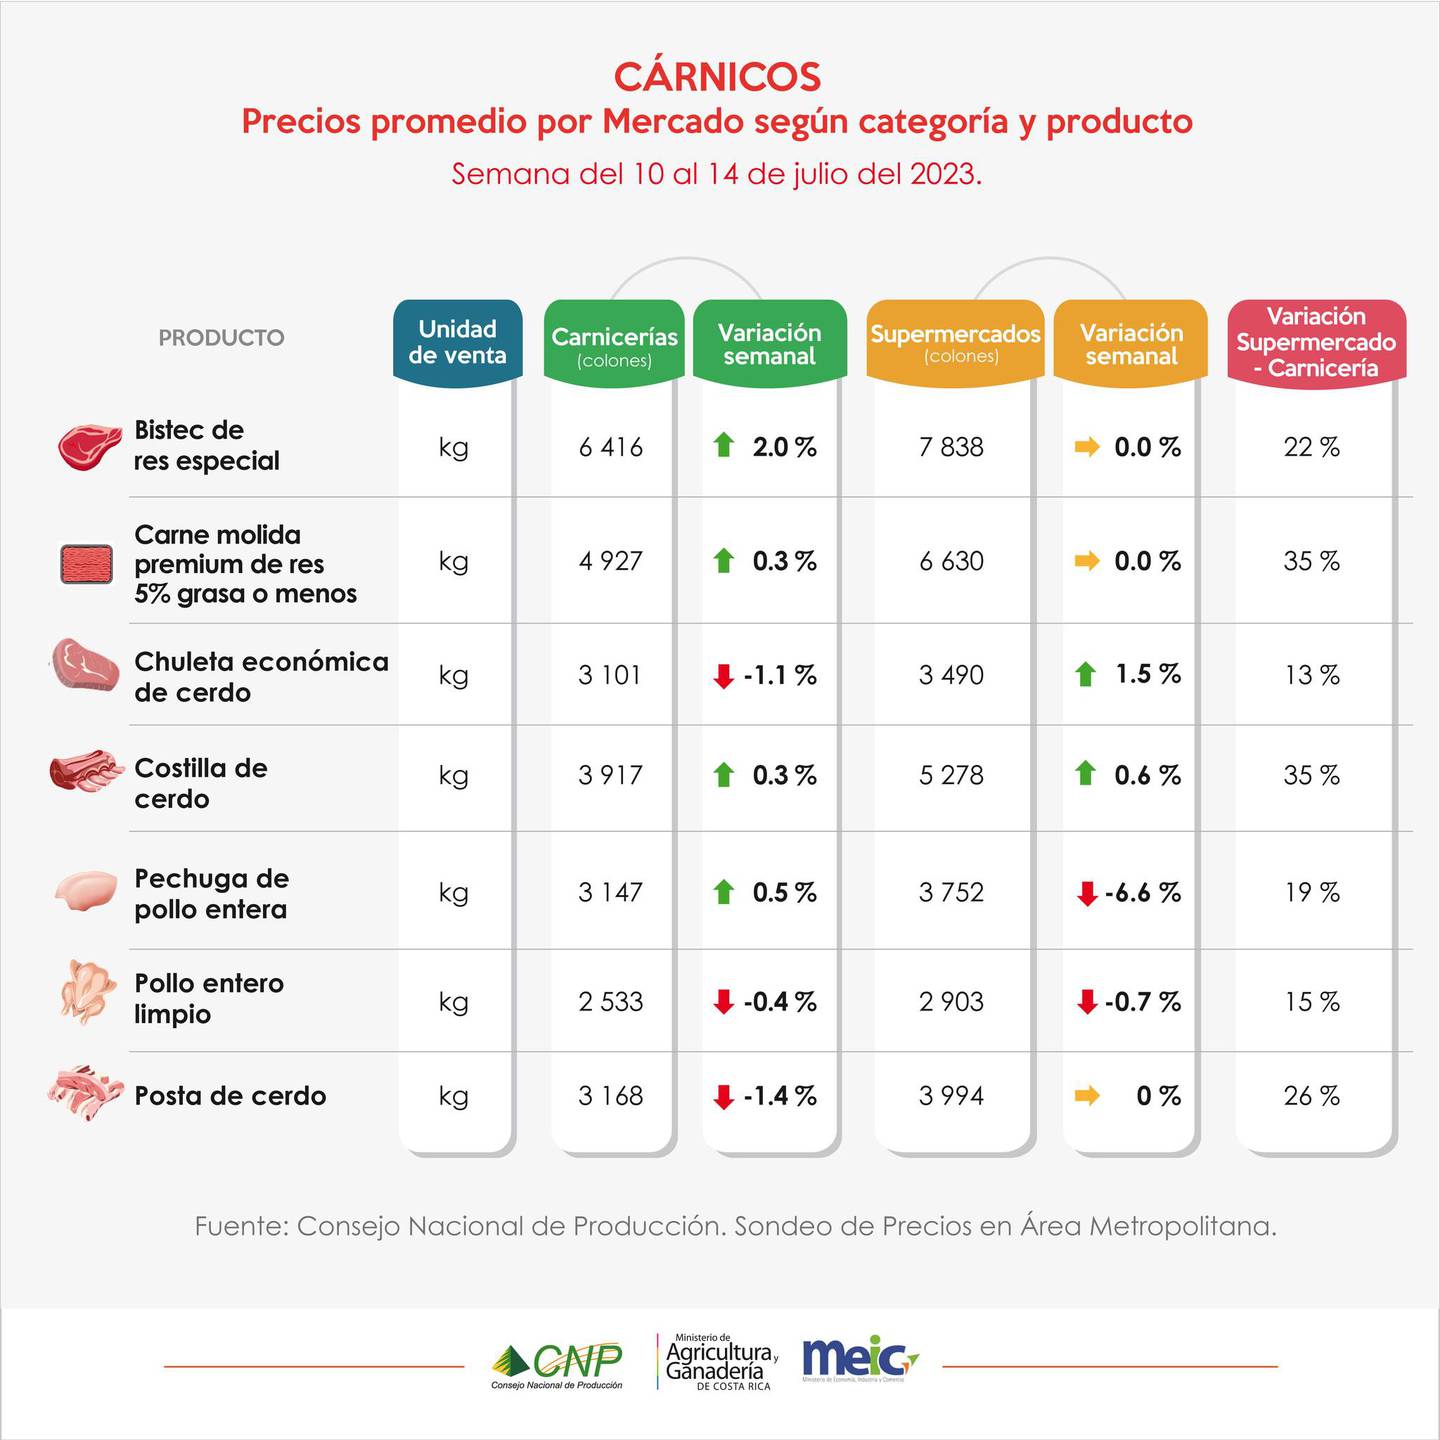 El Consejo Nacional de la Producción hace una comparación de precios entre las ferias del agricultor y los supermercados del país para el penúltimo fin de semana de julio del 2023.